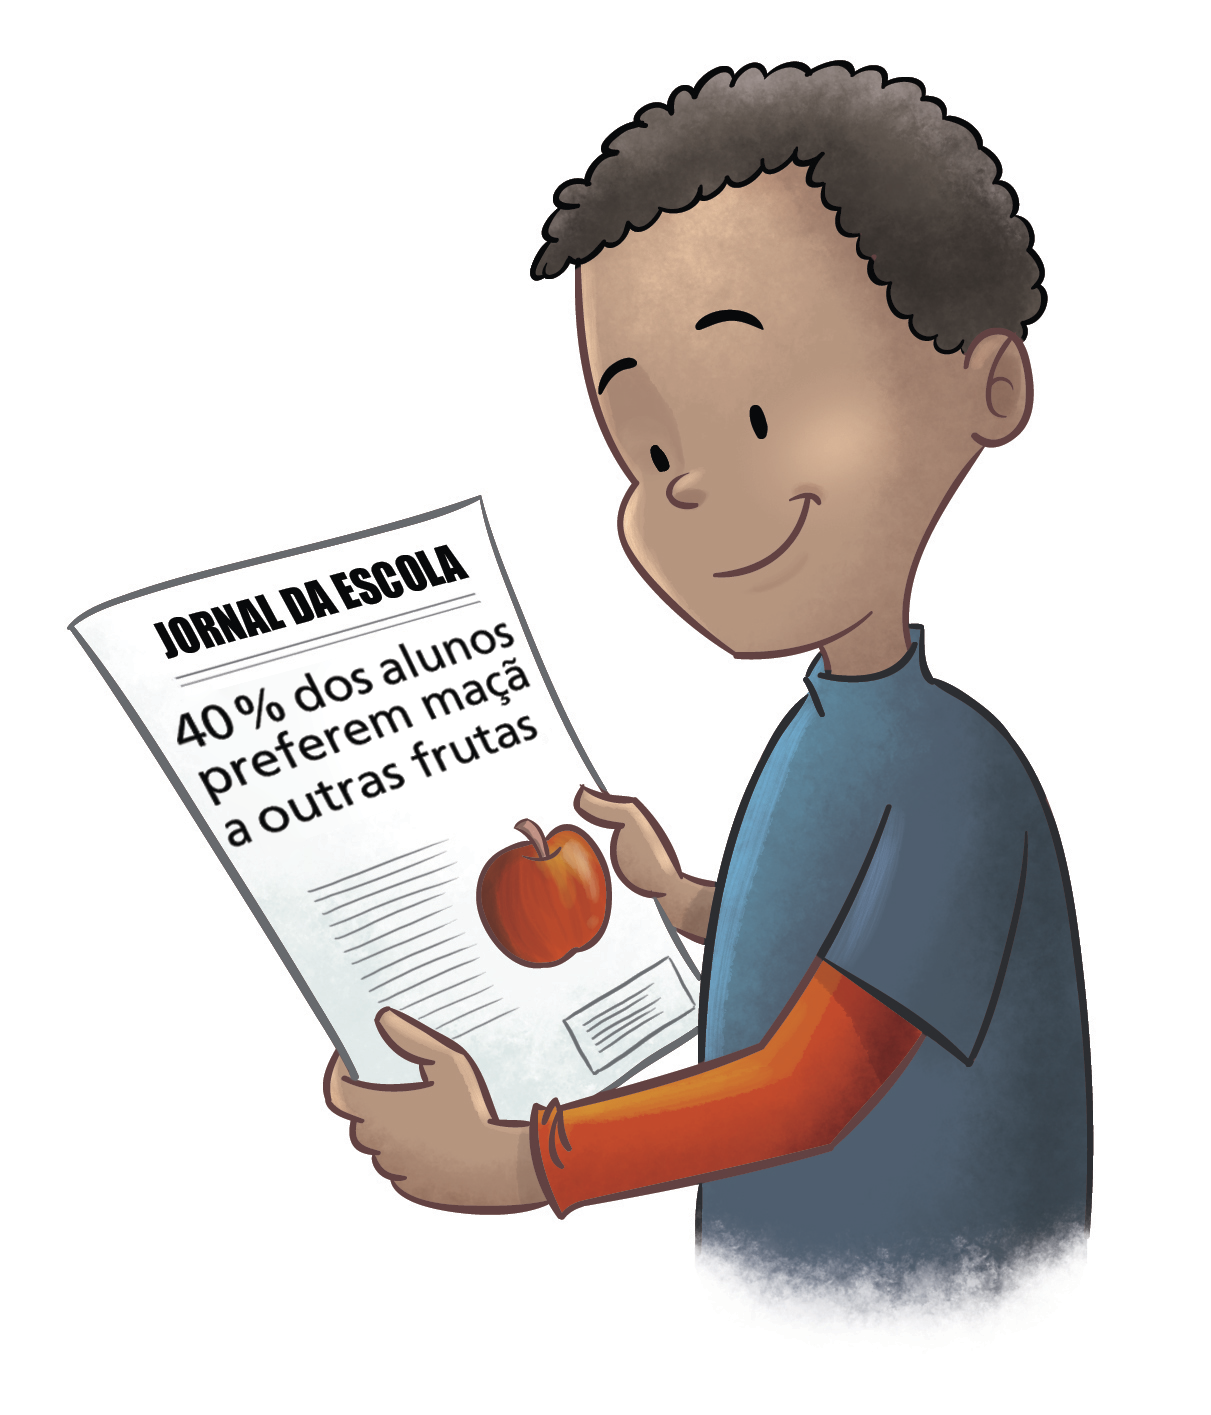 Ilustração. Menino negro de cabelo curto, preto e camiseta azul. Ele lê um jornal com a imagem de uma maçã vermelha. O título do jornal é "jornal da escola" e a manchete diz "40 por cento dos alunos preferem maçã a outras frutas".